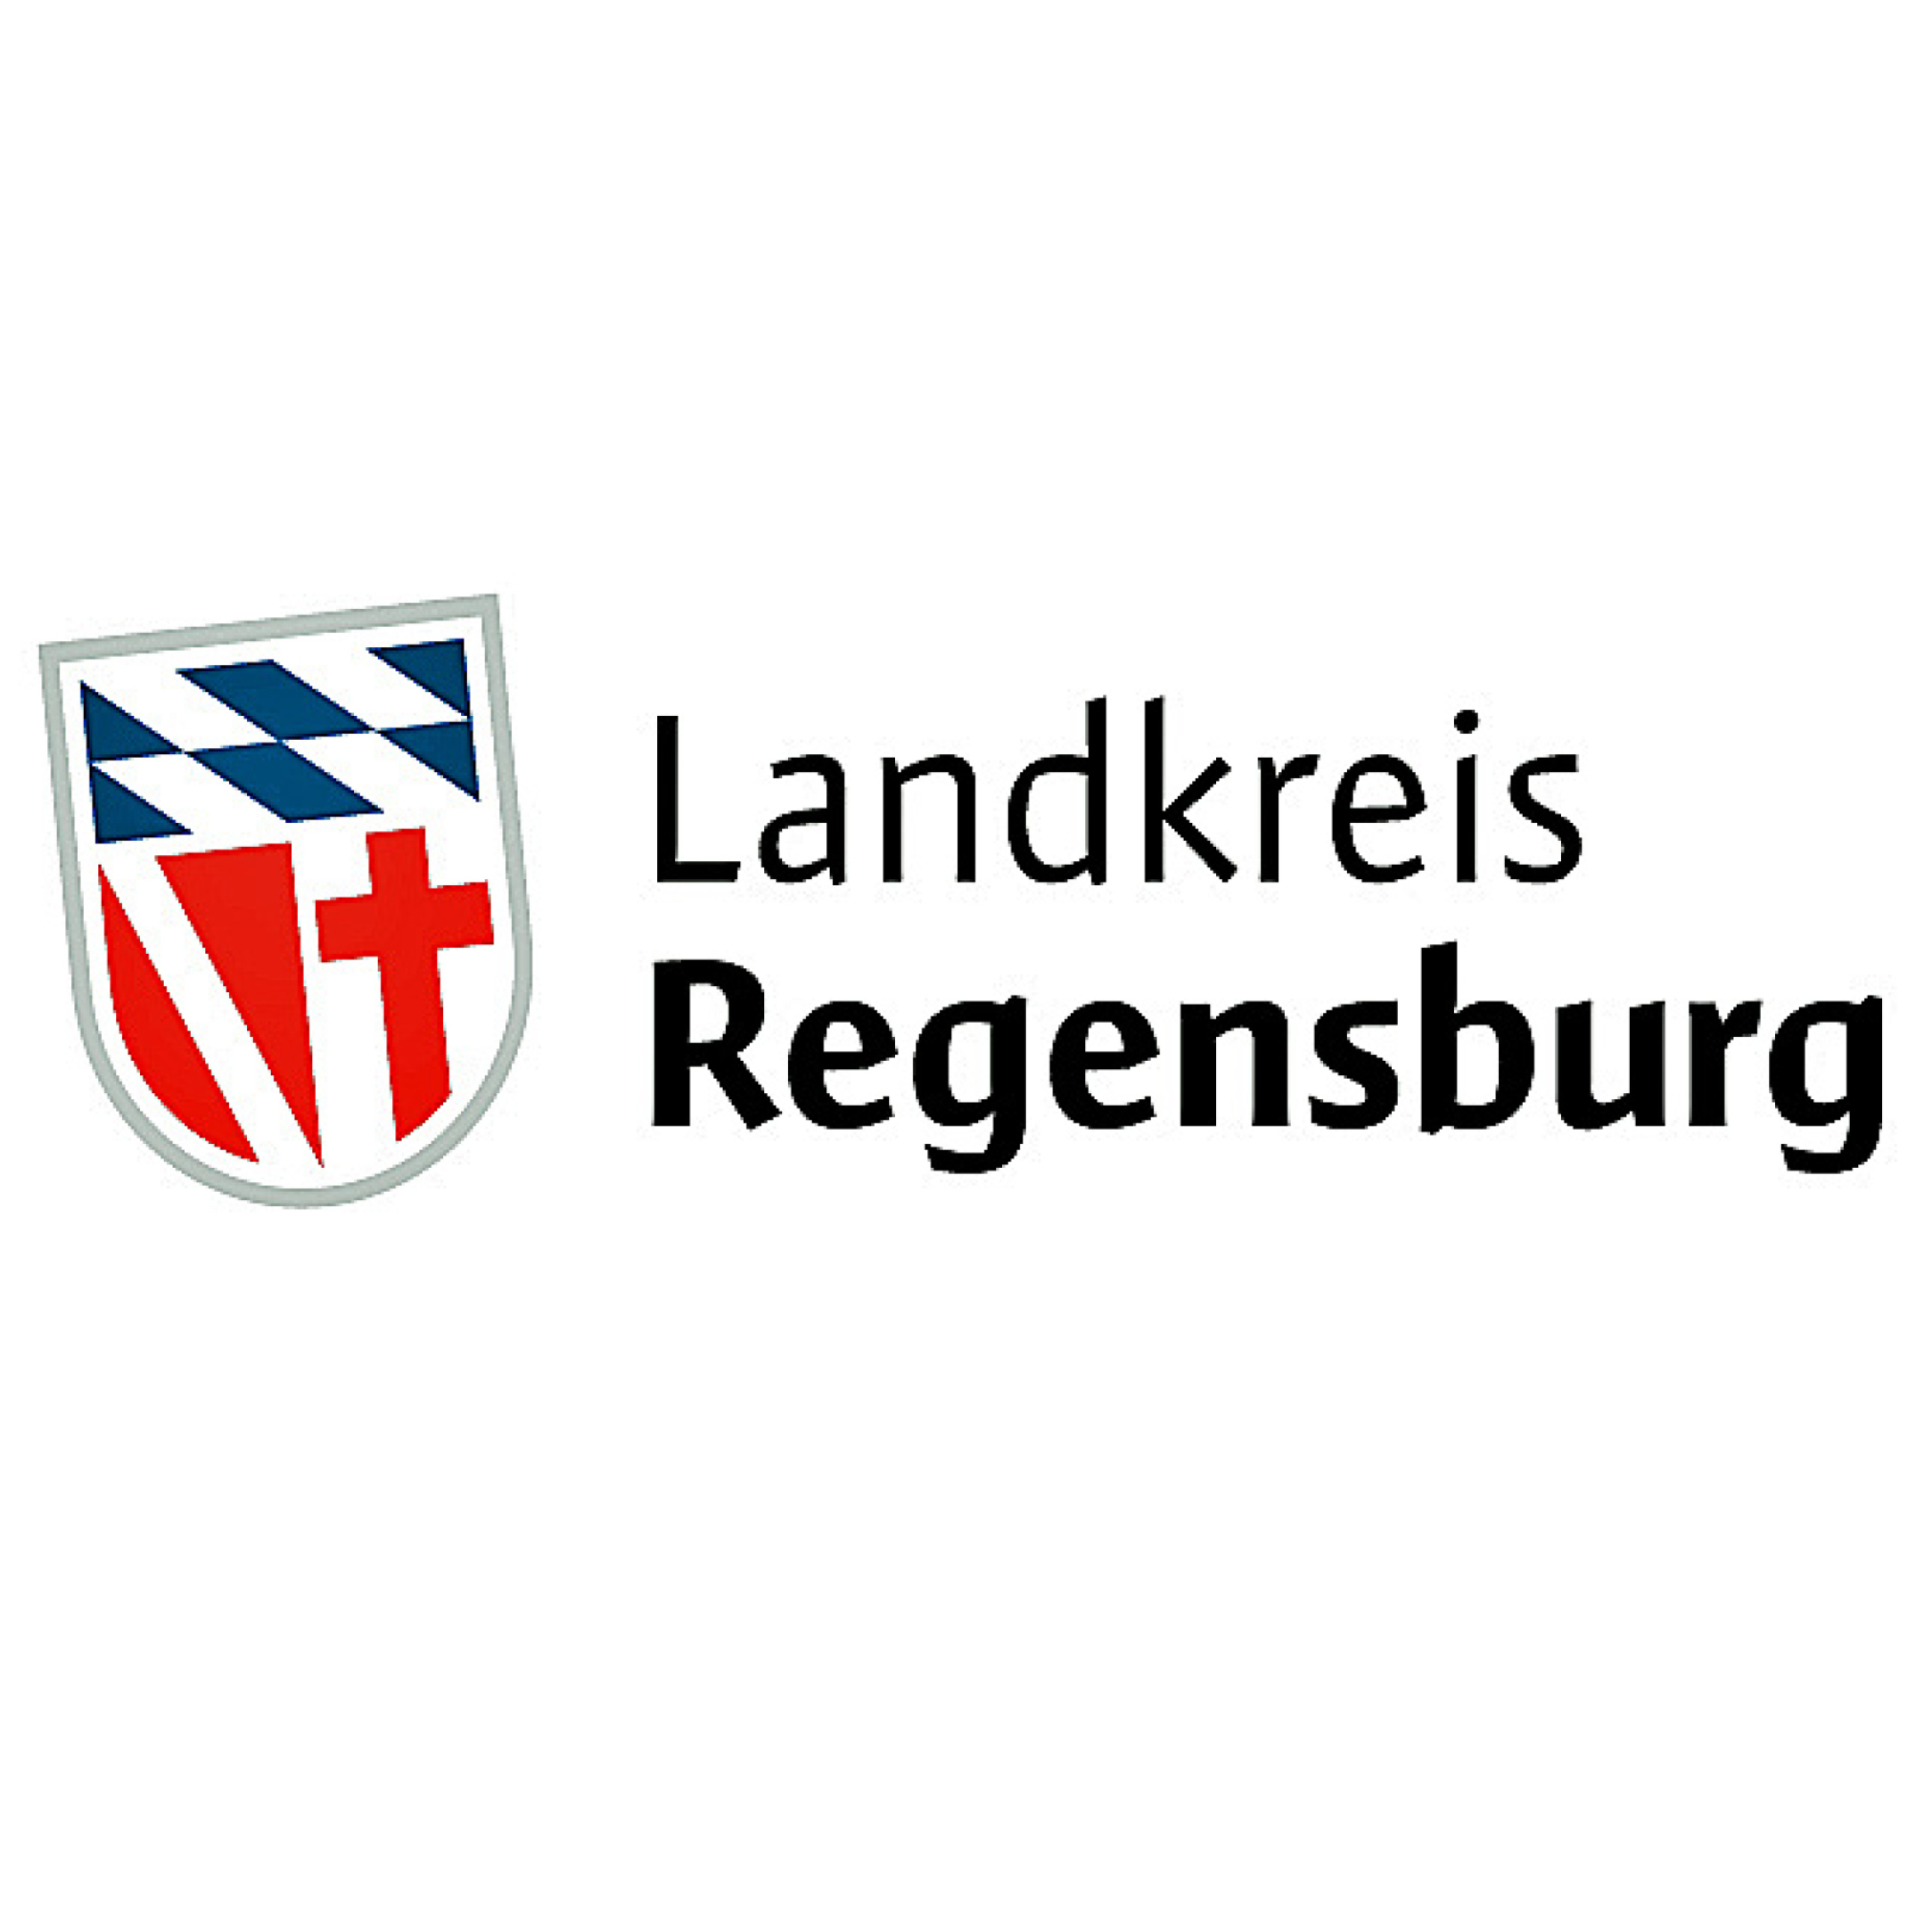 Stadt und Landkreis Regensburg laden zur Seniorendult ein.